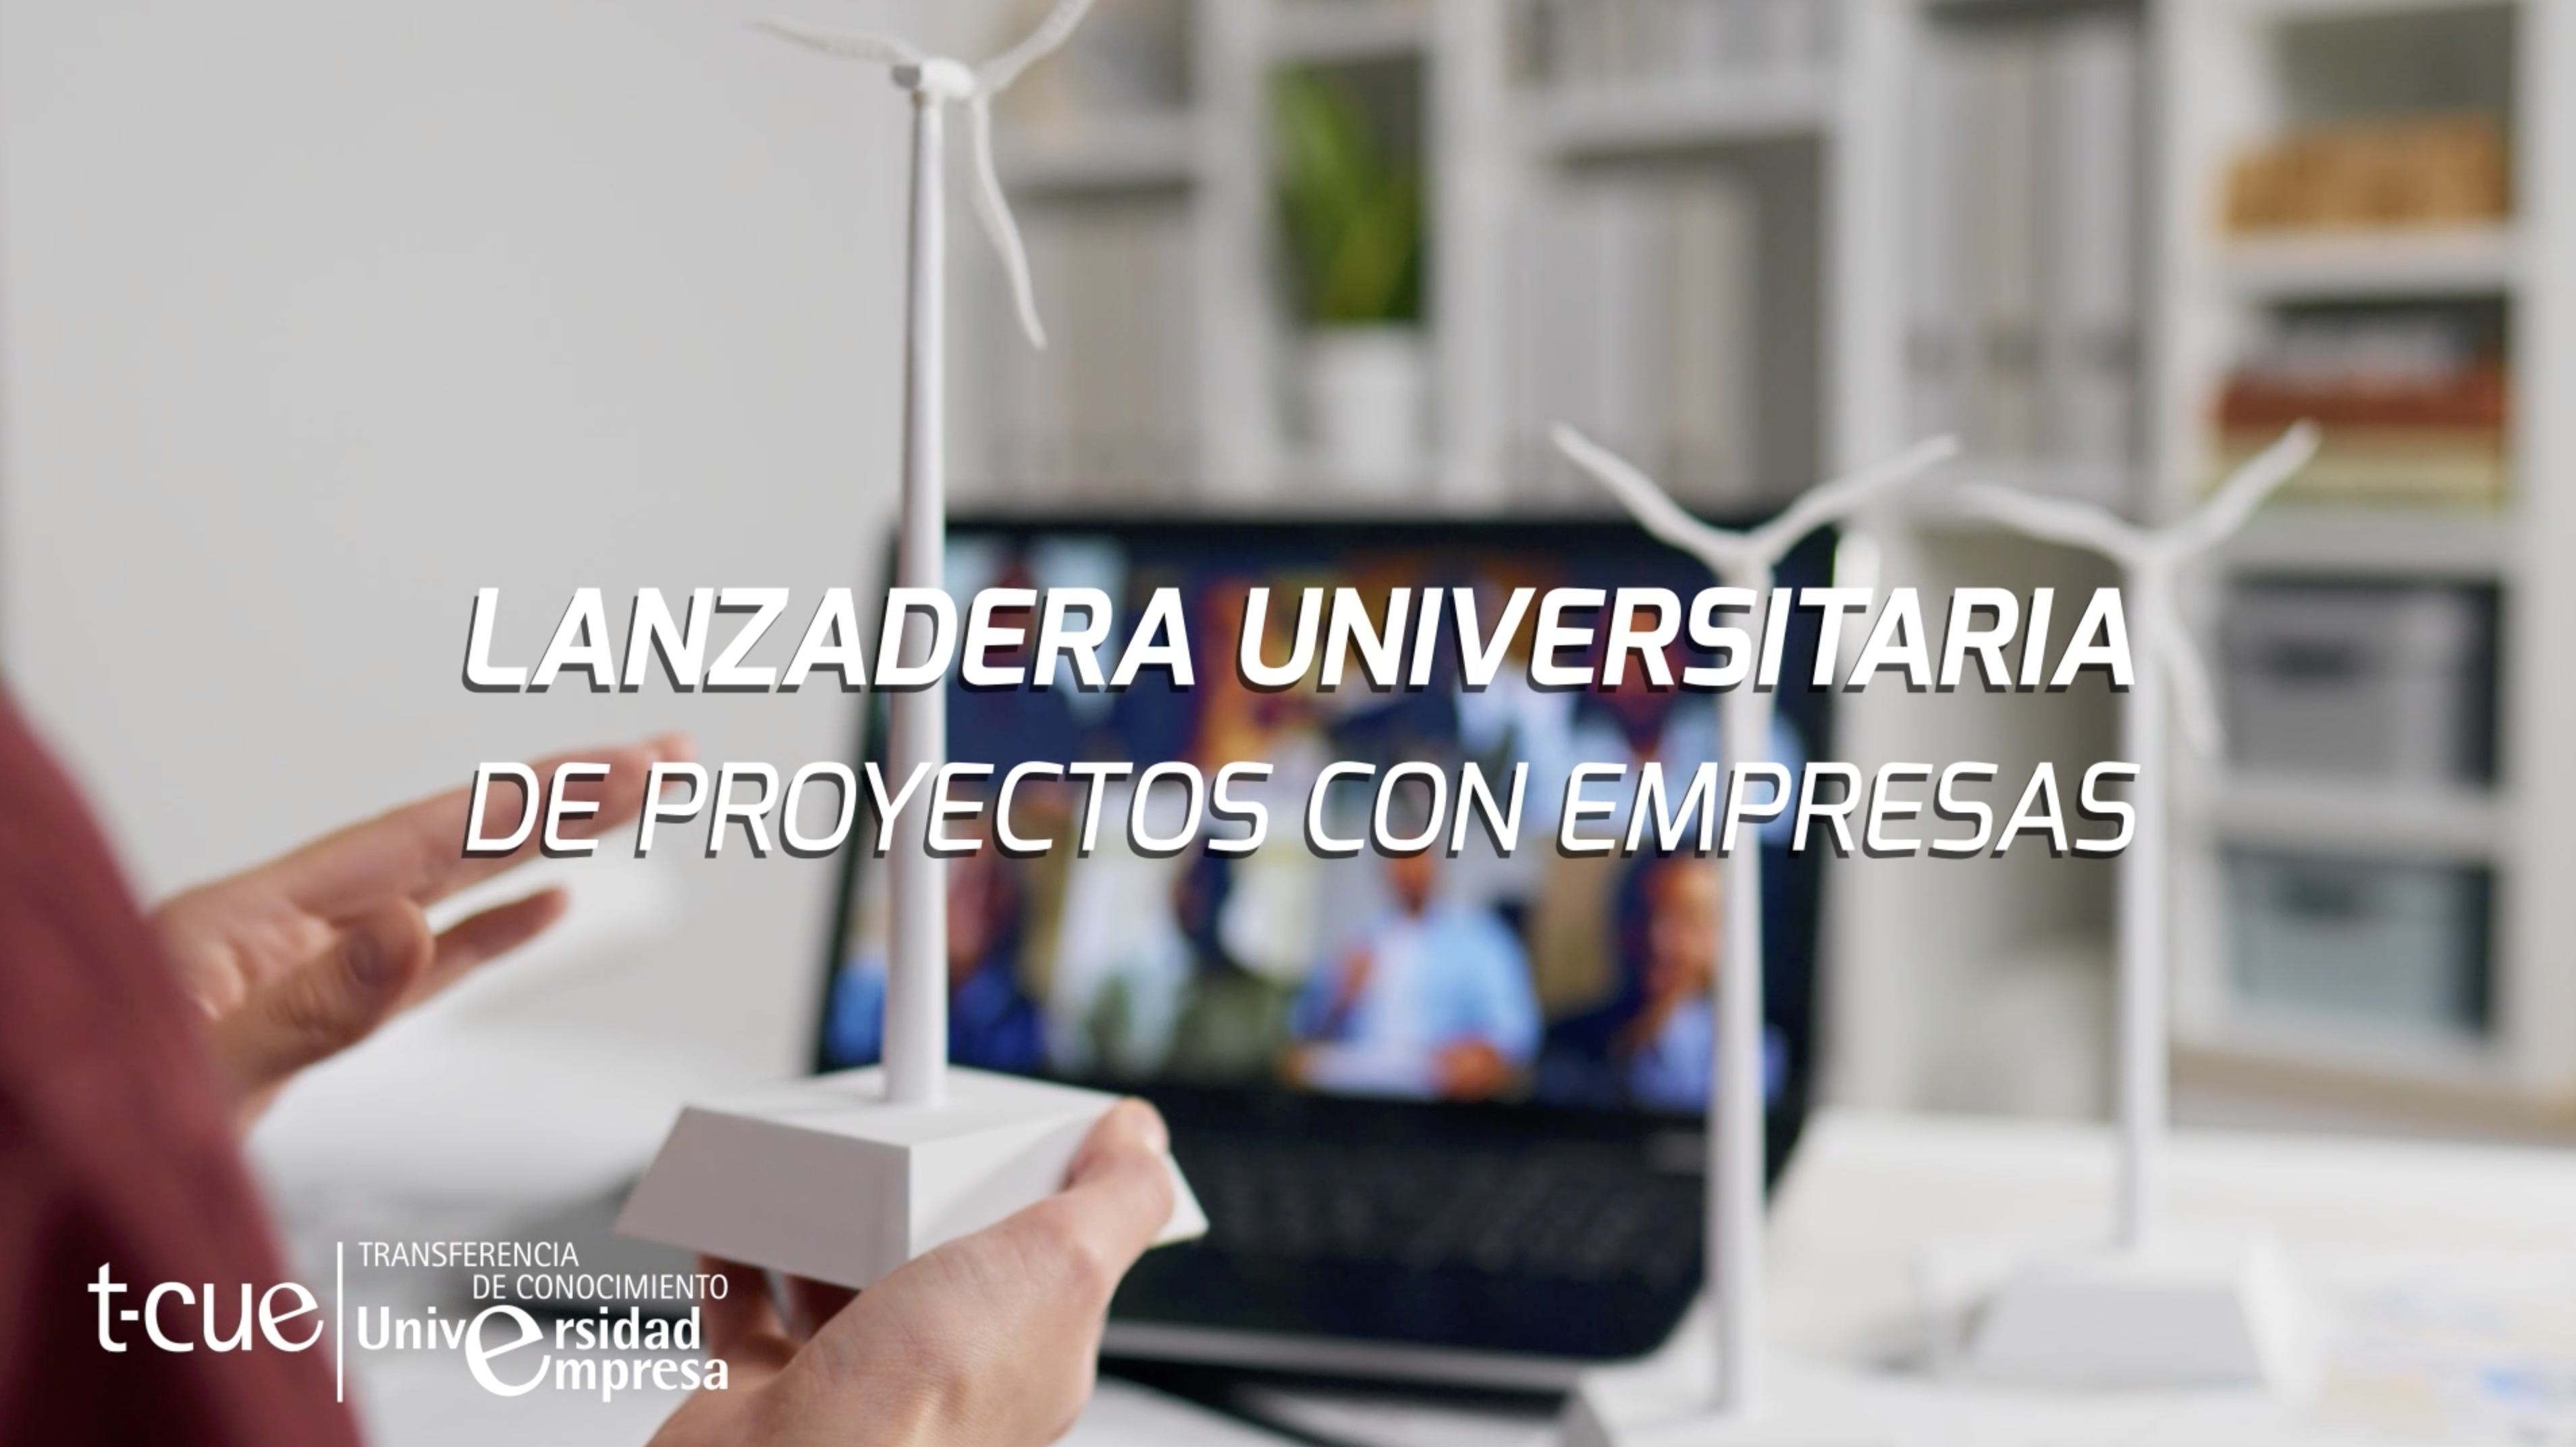 La Fundación General convoca la Lanzadera universitaria de proyectos con empresas